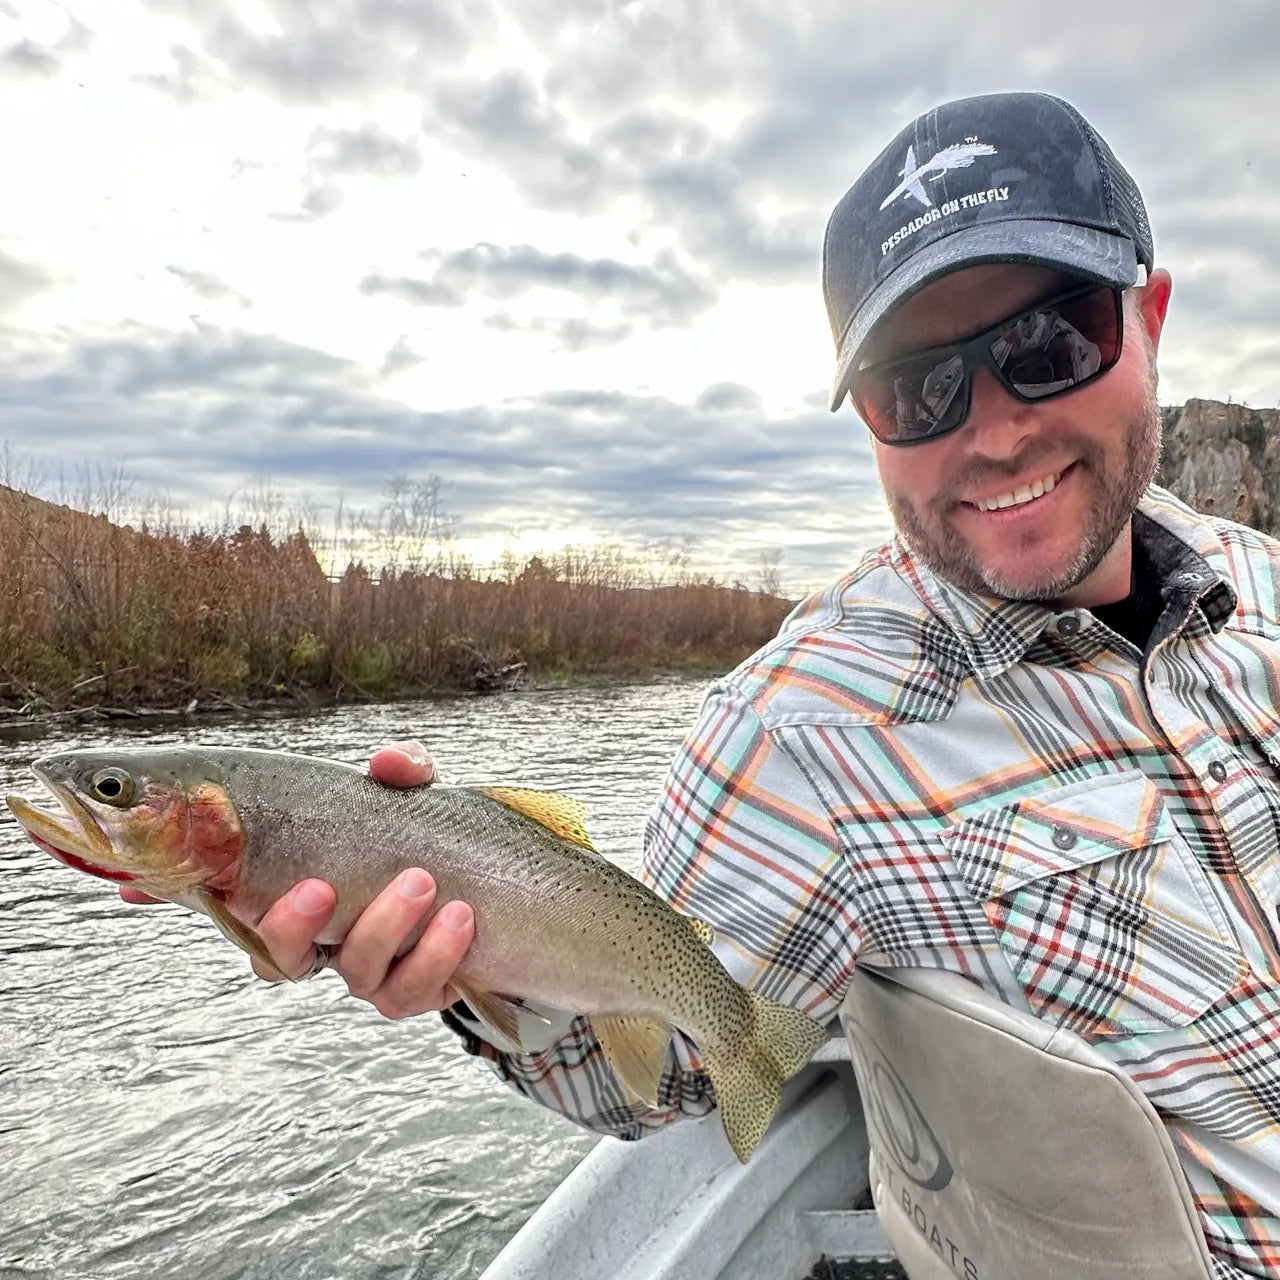 October Streamer Fishing on The Clark Fork in Montana